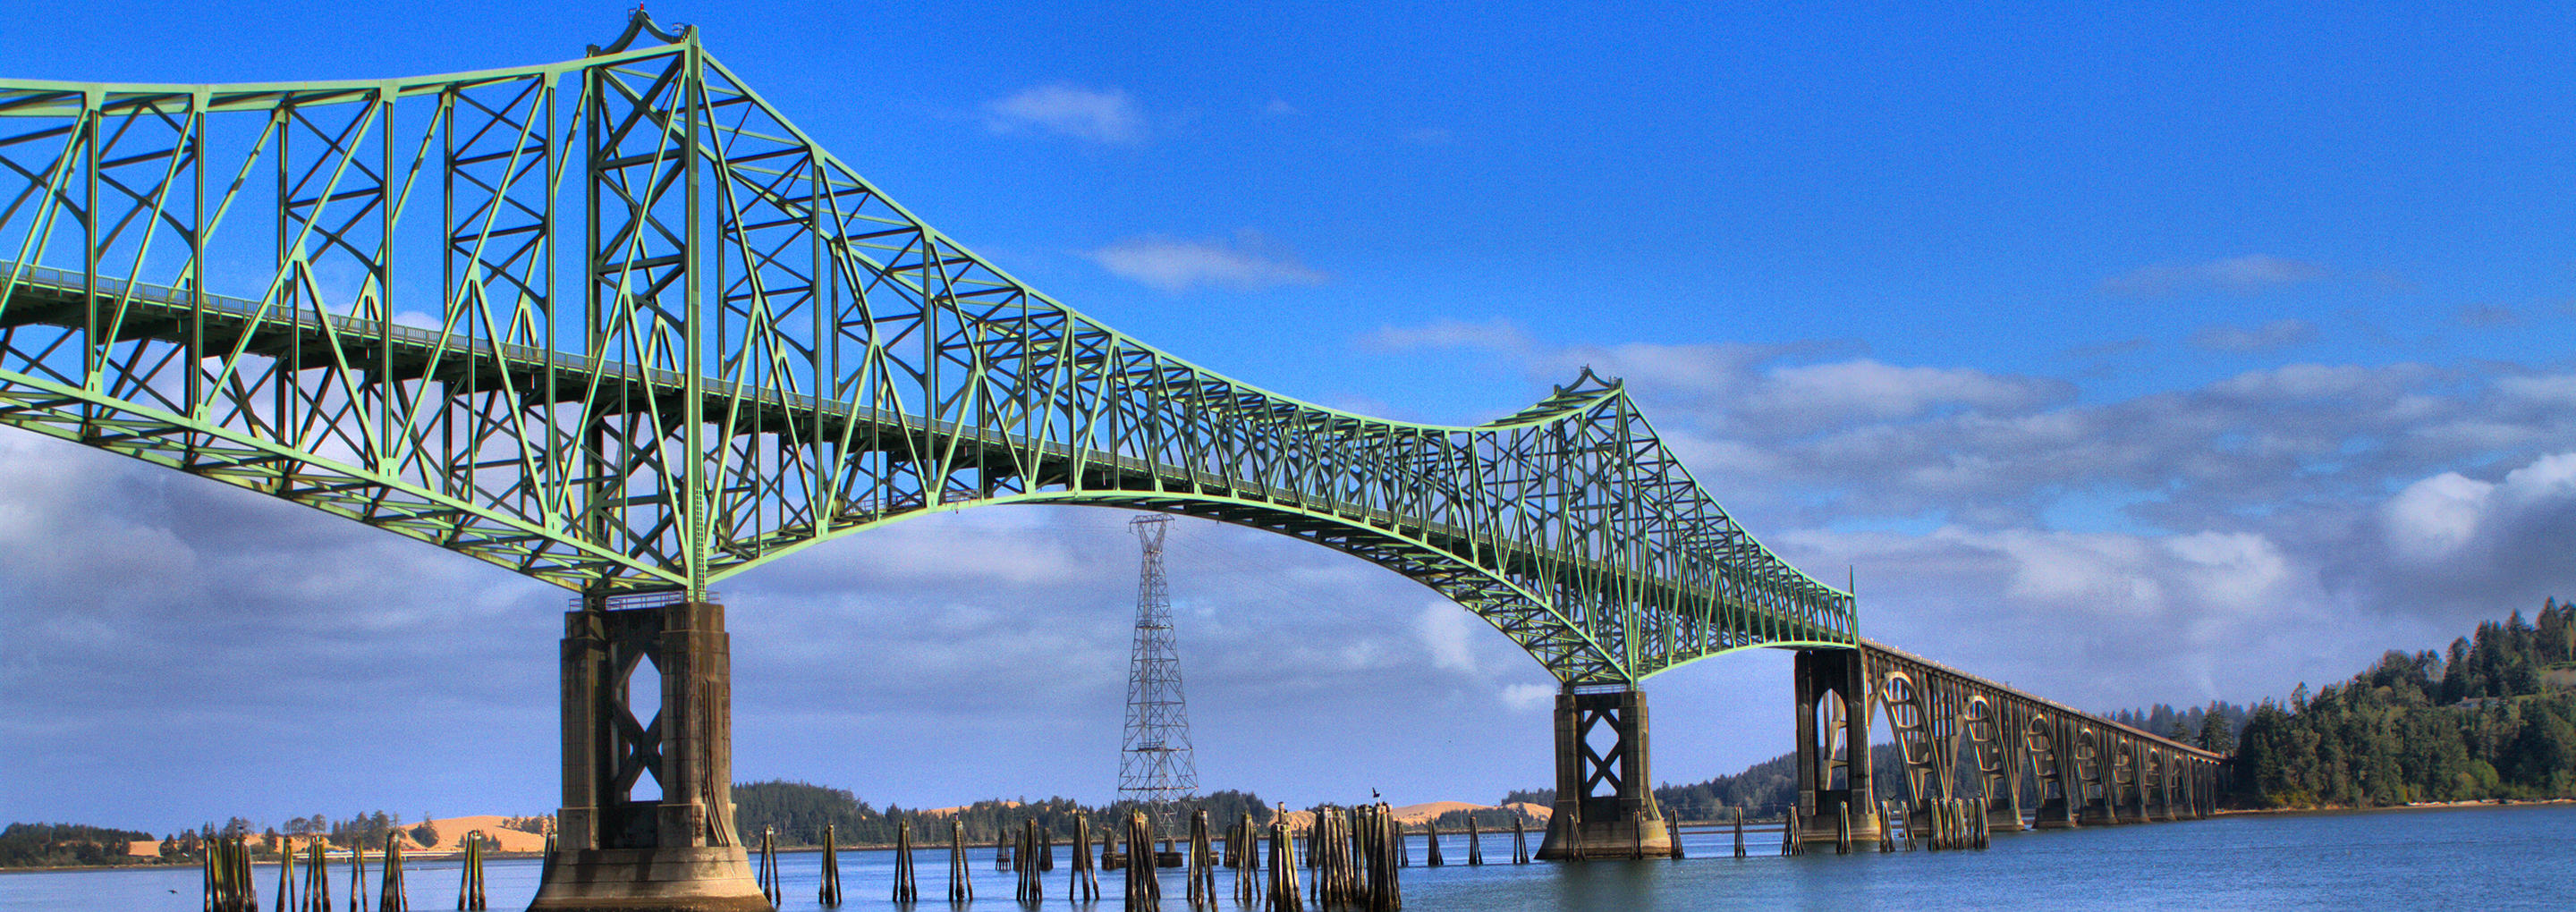 Bridge in Coos Bay Oregon